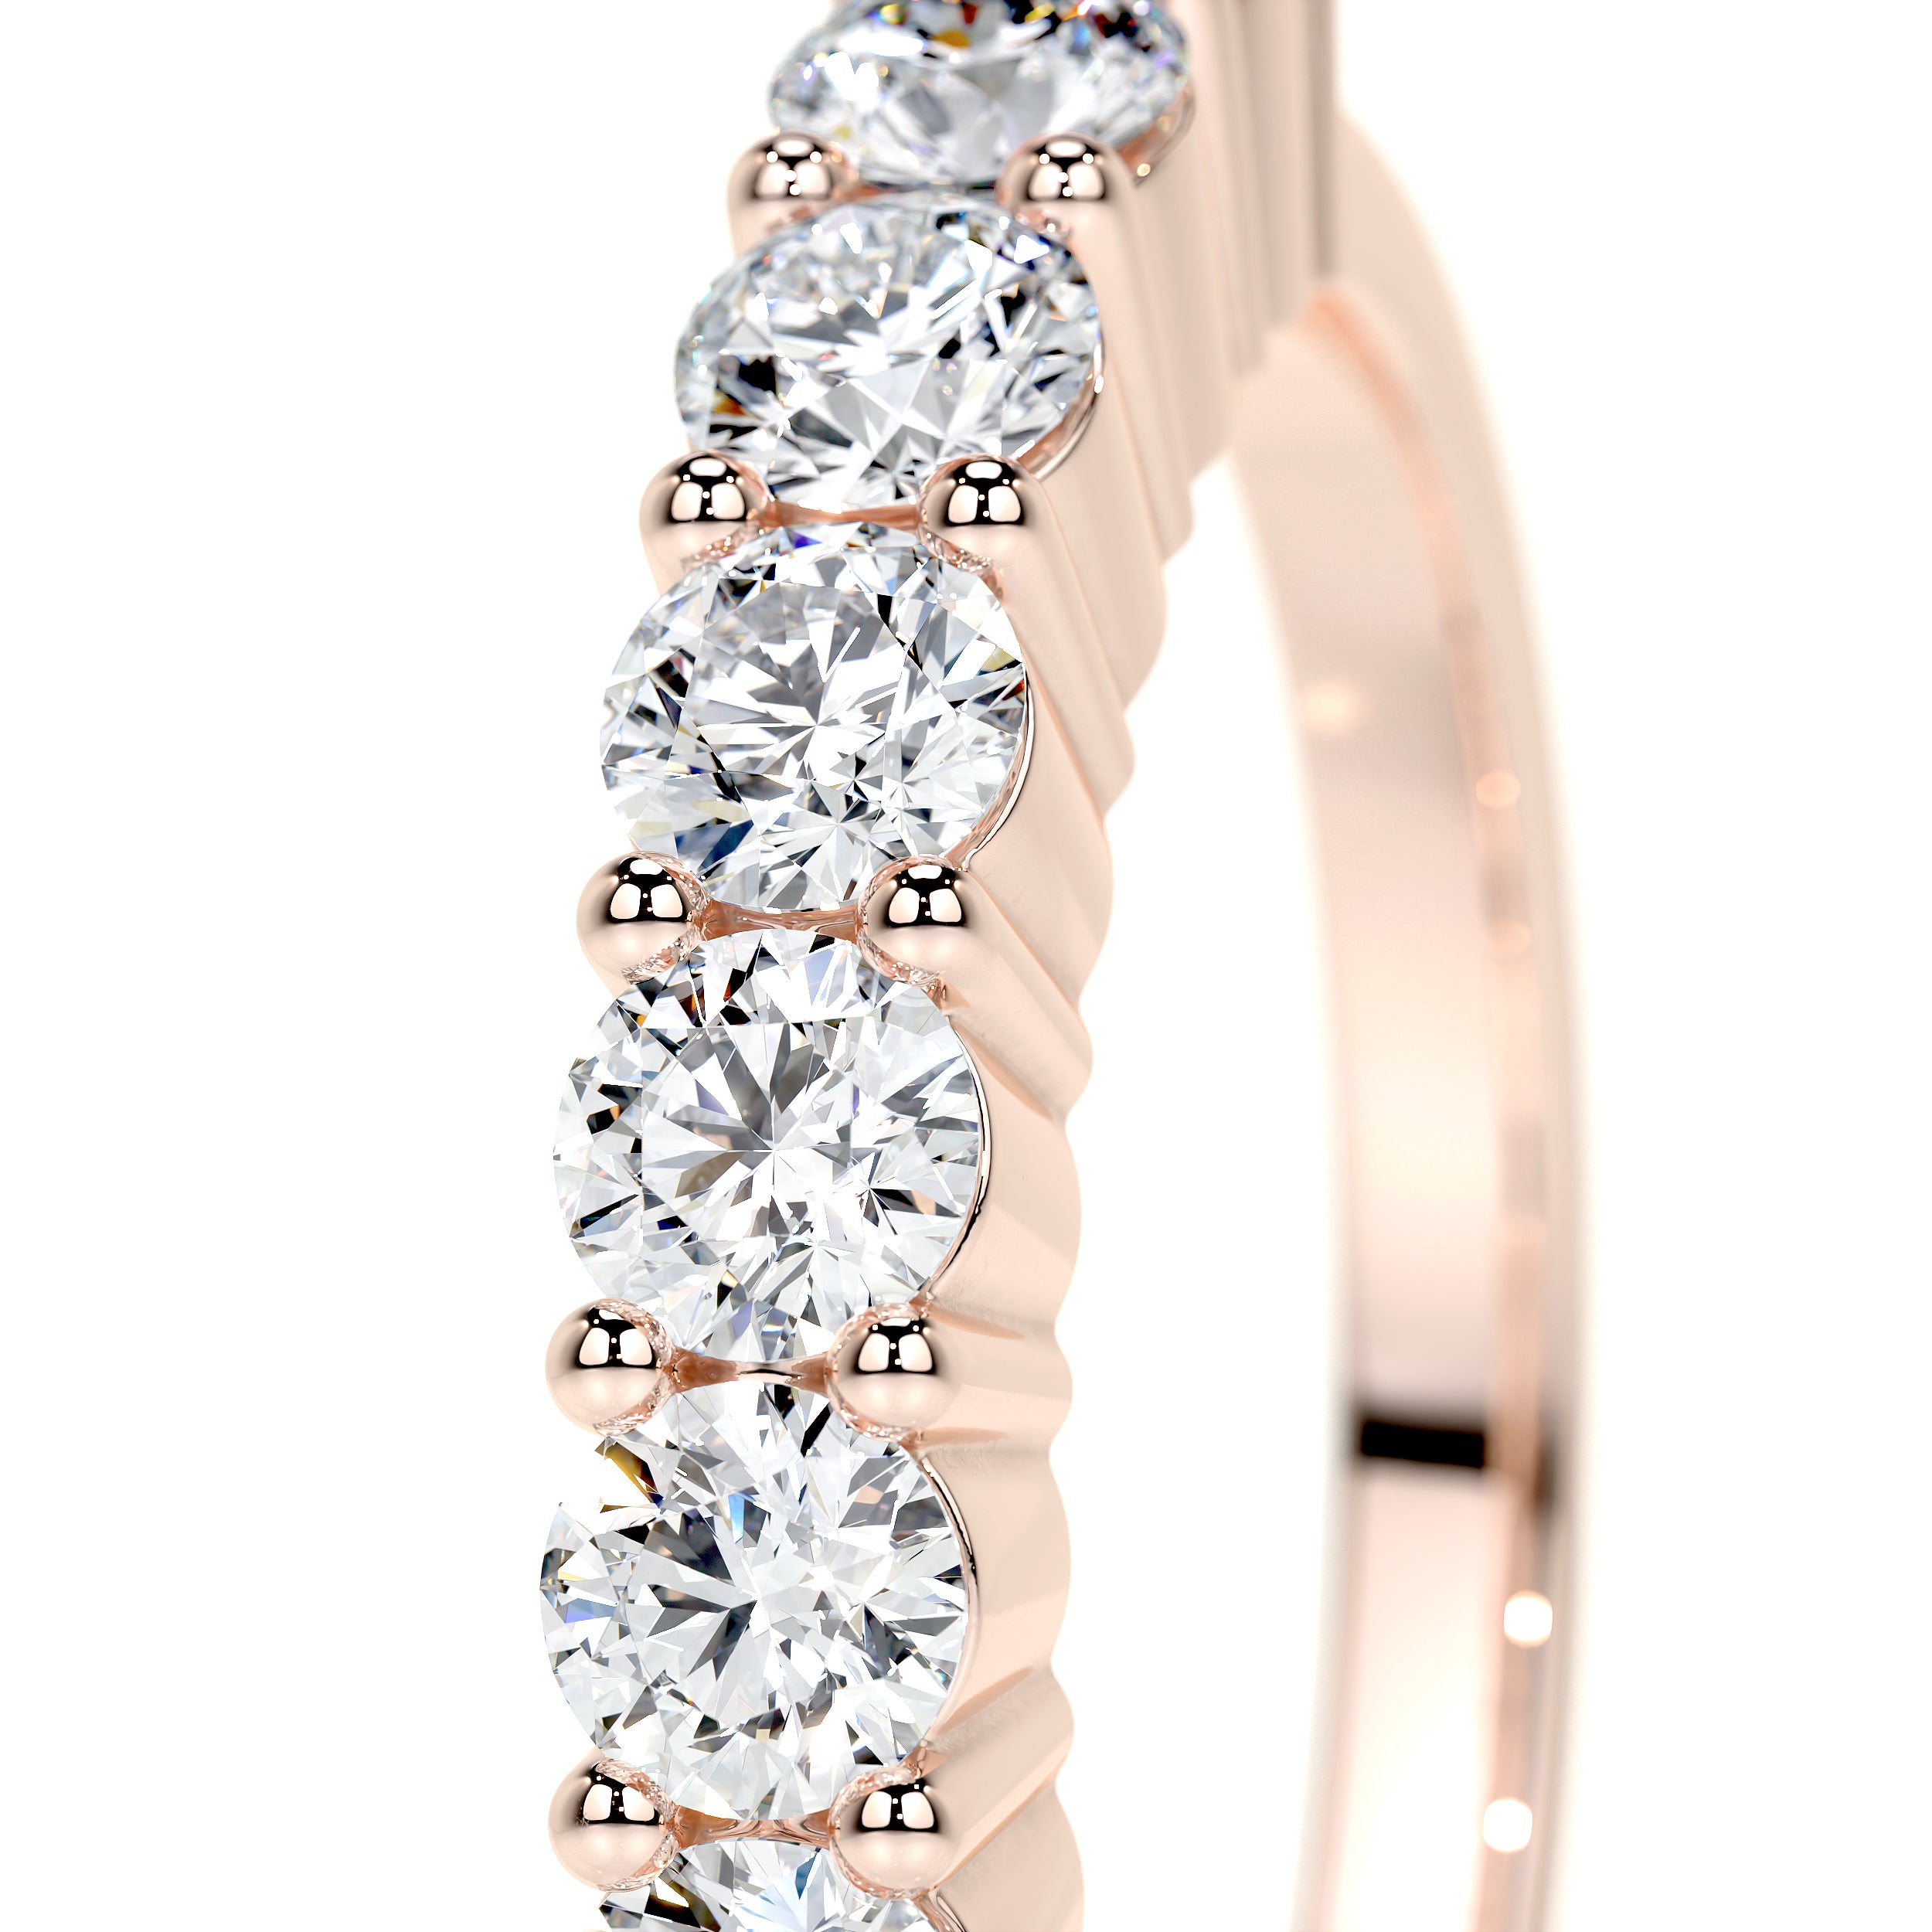 Catherine Lab Grown Diamond Wedding Ring   (0.75 Carat) -14K Rose Gold